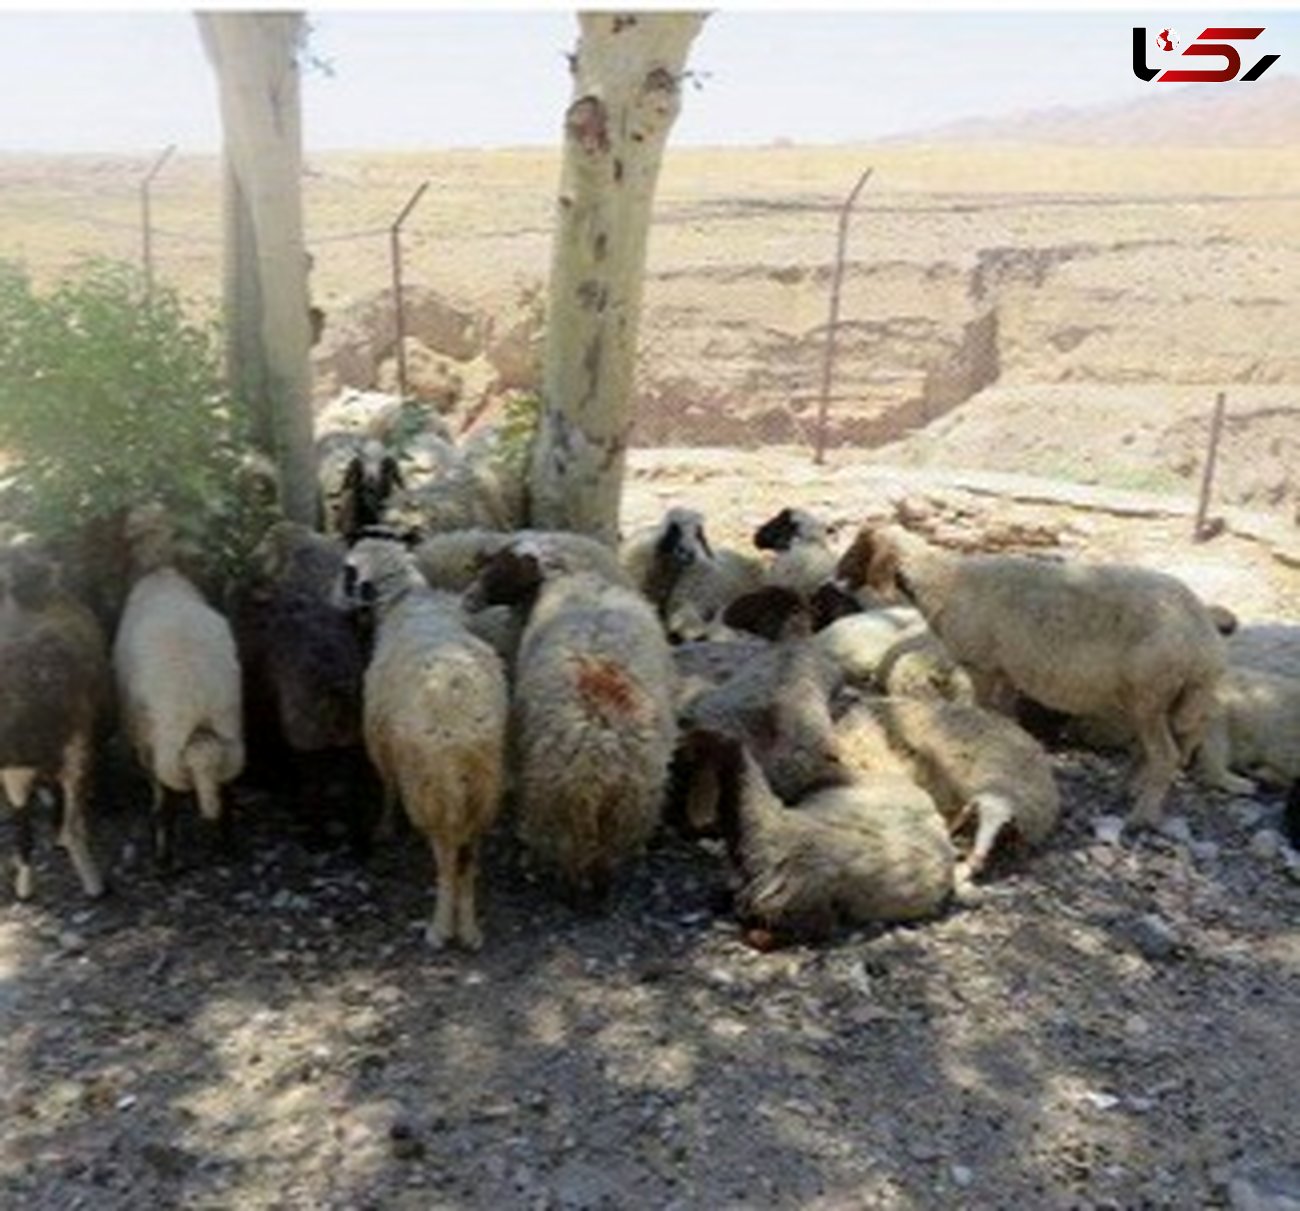 داستان تکراری قاچاق احشام در مرز دهلران / جلوی 230 راس گوسفند را گرفتند!